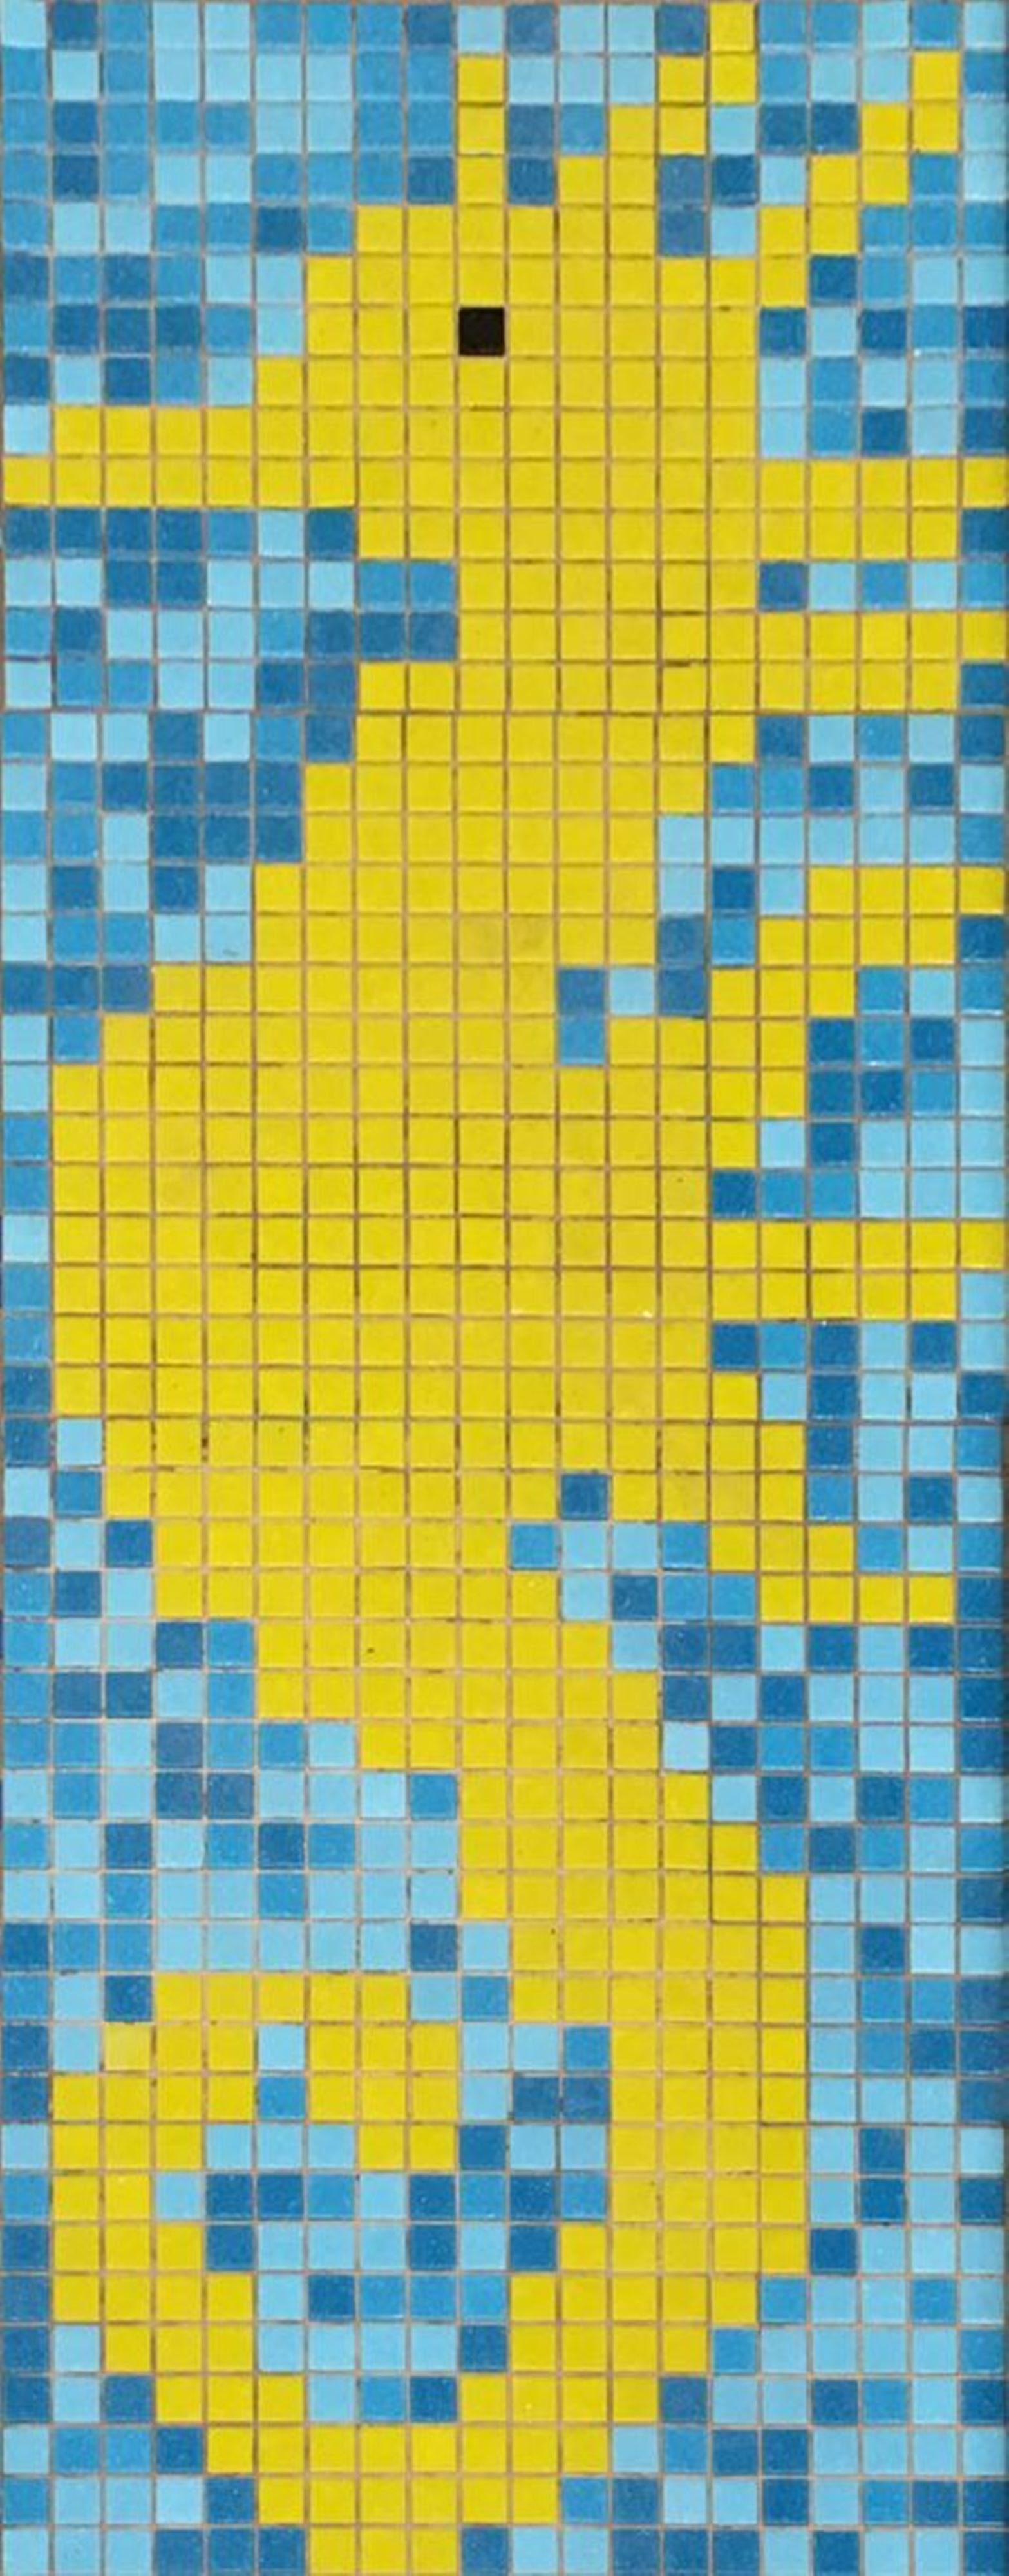 Mosani Mosaikfliesen Seepferdchen Bild Poolboden Glasmosaik, Set, Papierverklebt